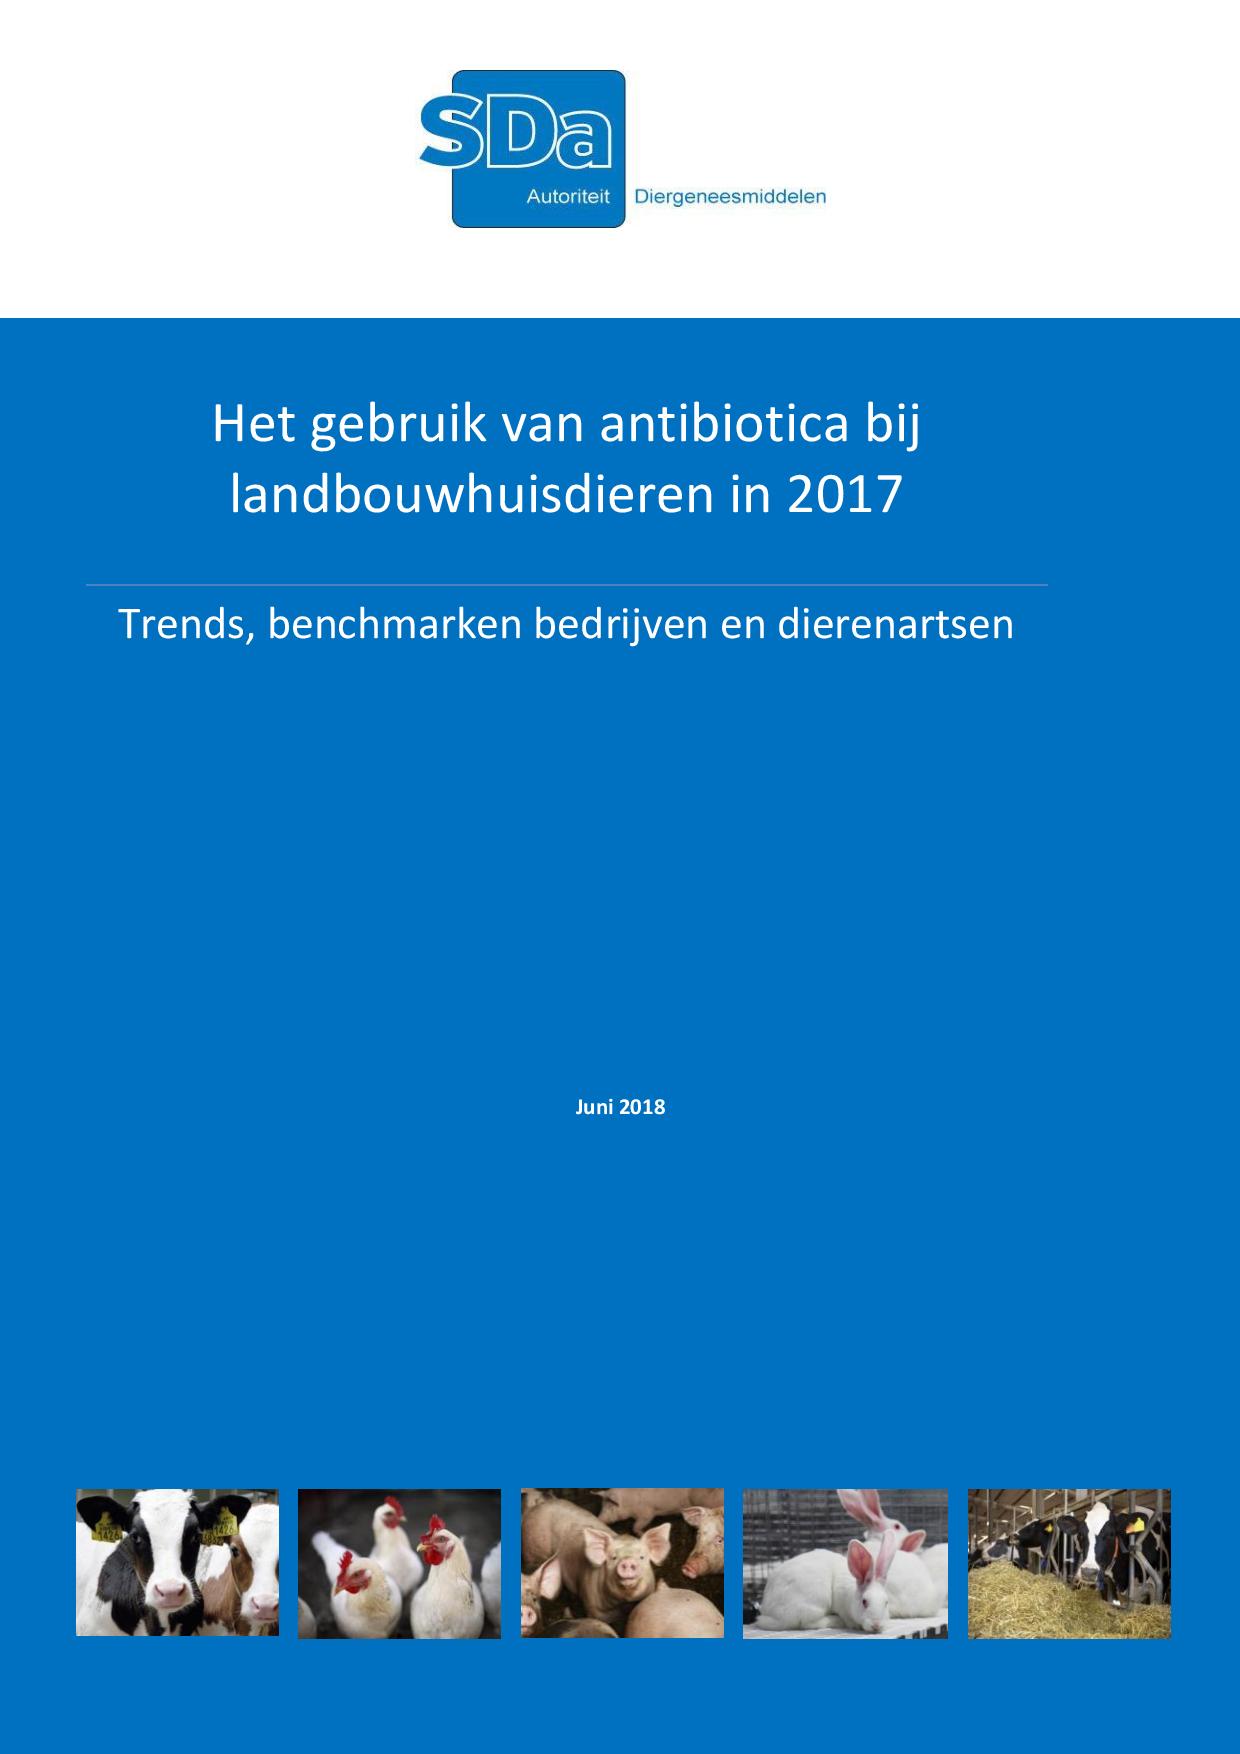 SDa-rapport 'antibioticumgebruik in 2017'